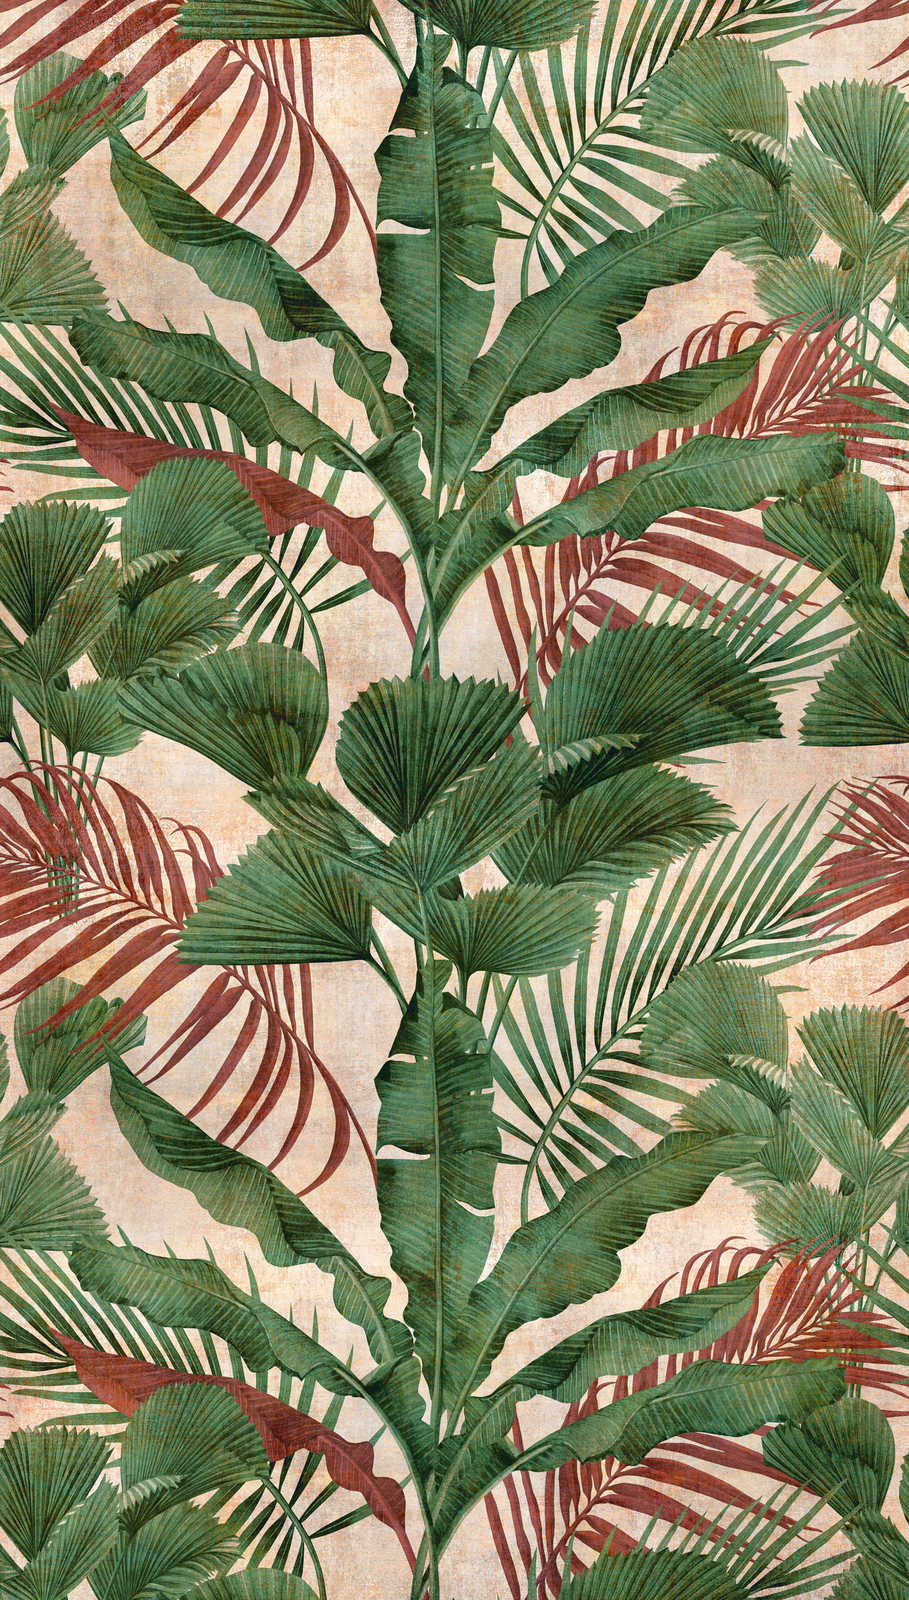             Papel pintado selva con plantas tropicales - verde, beige, rojo
        